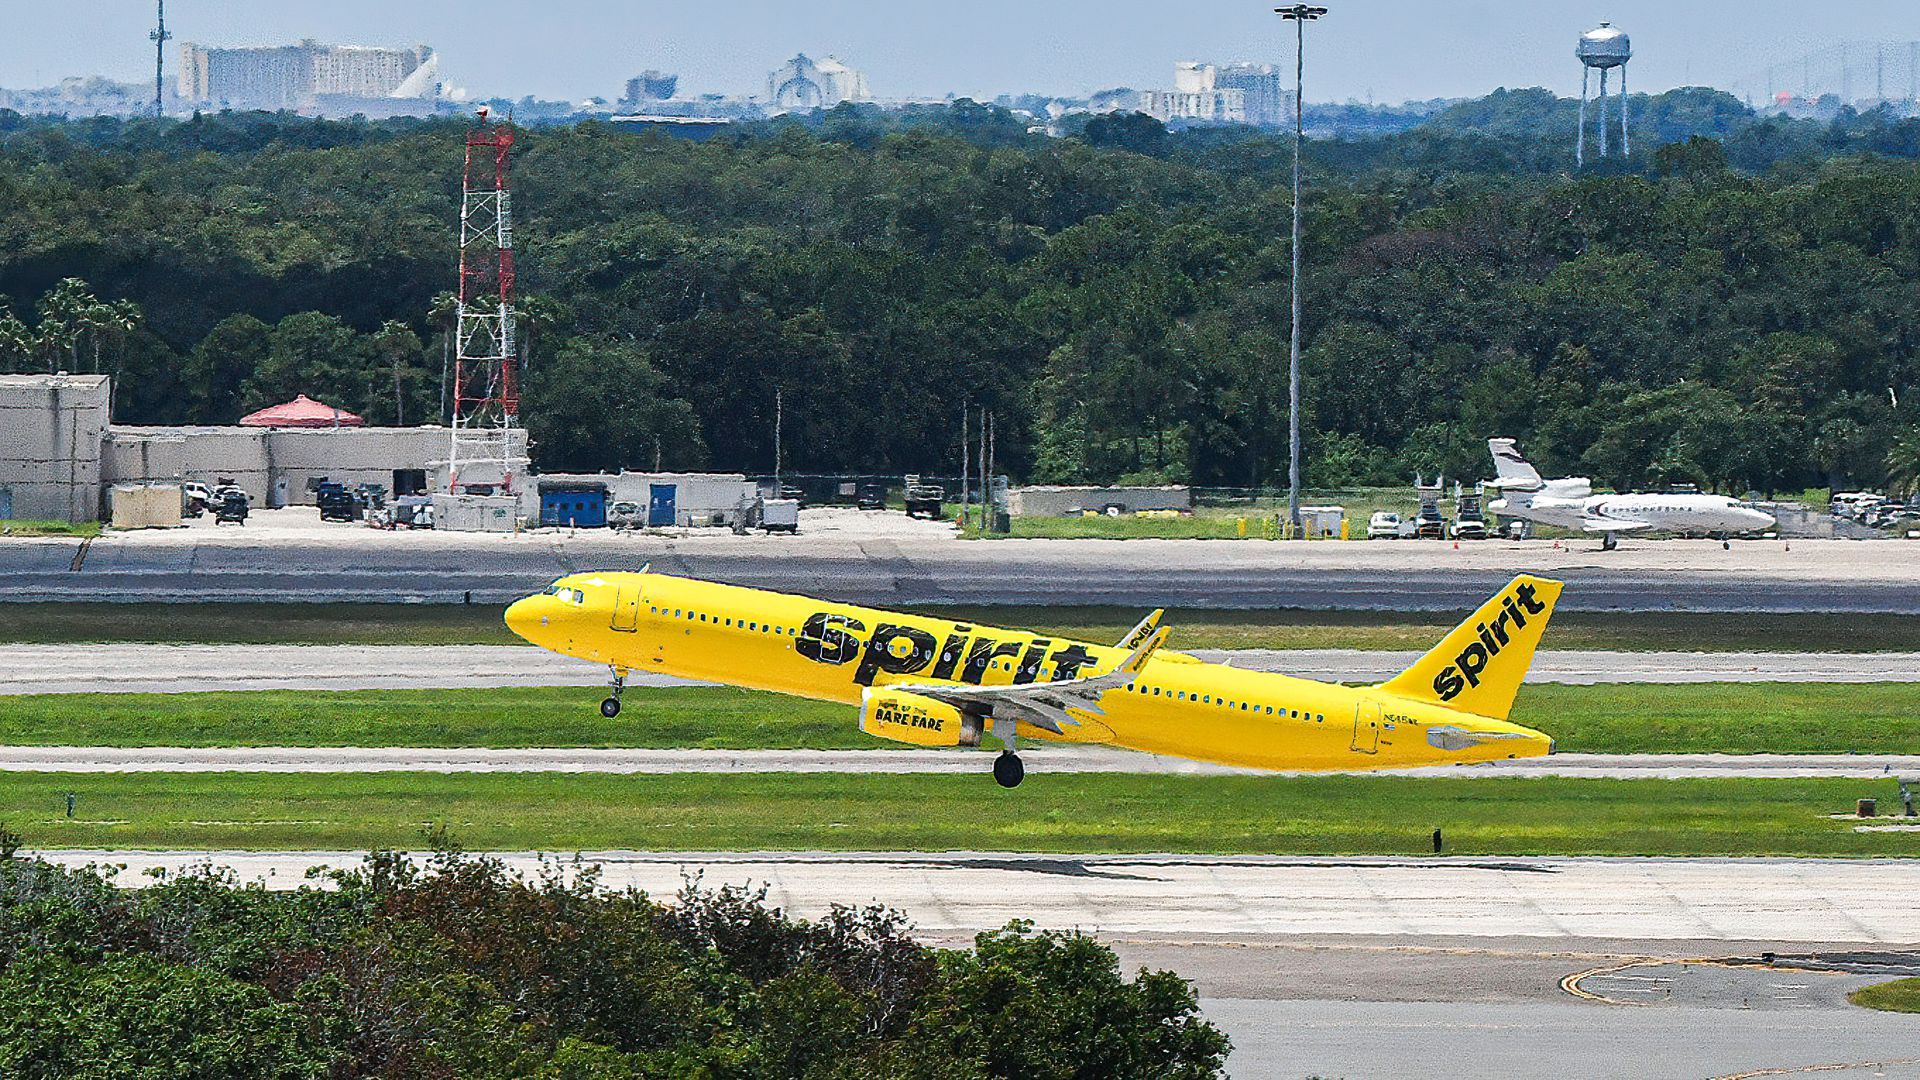 Spirit Airplane taking off